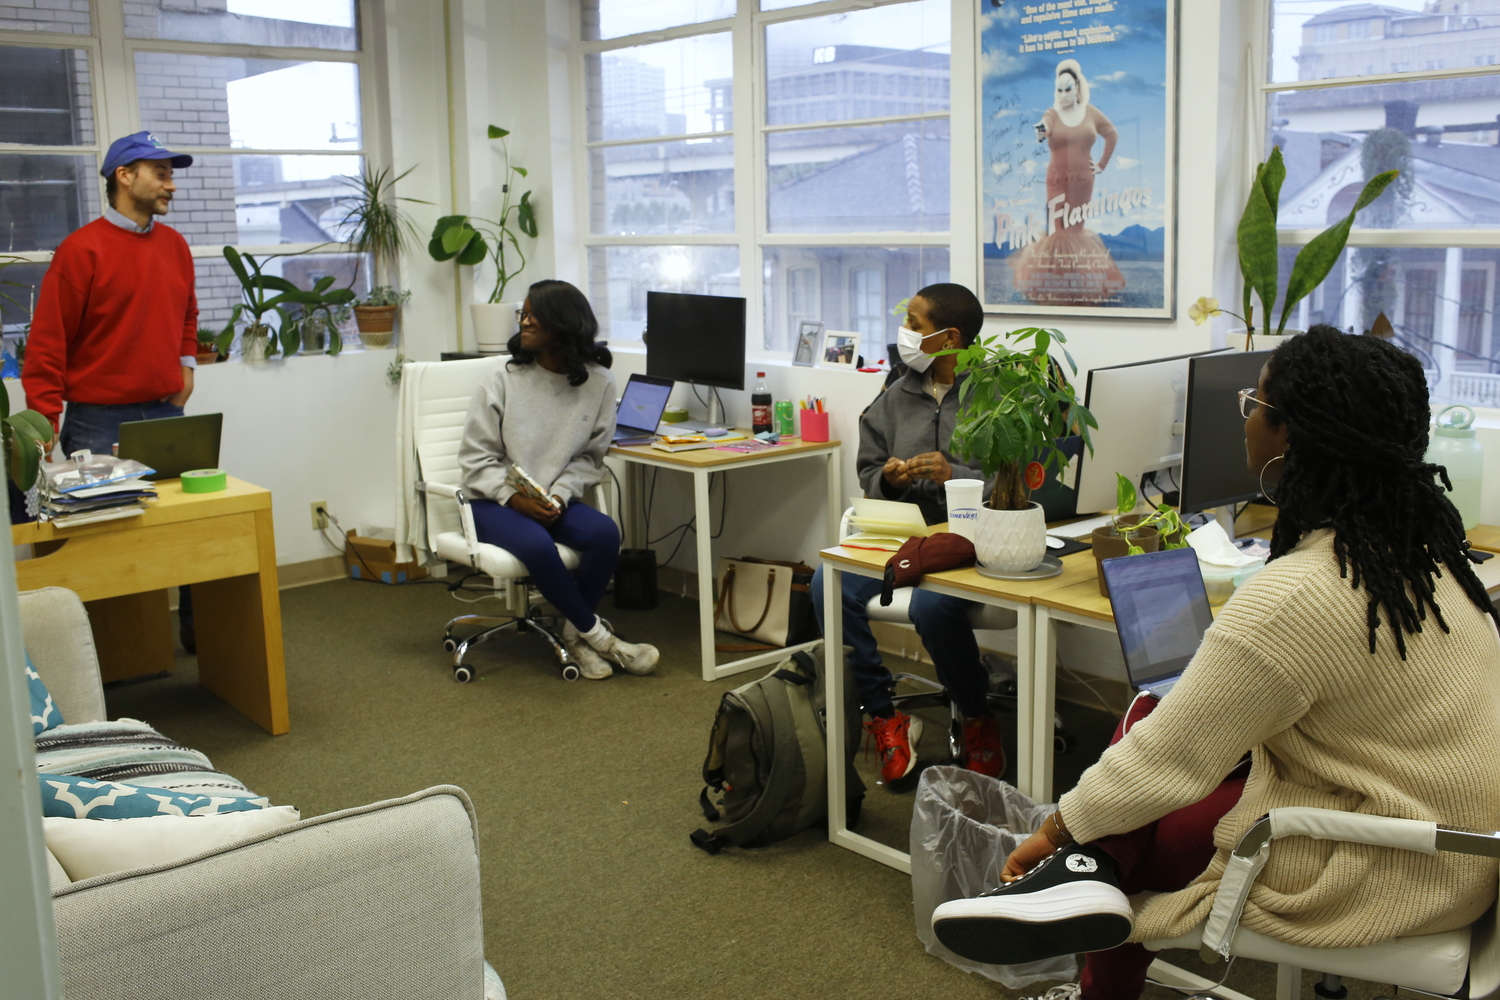 Clint et ses collègues dans leur bureau © Globe Reporters